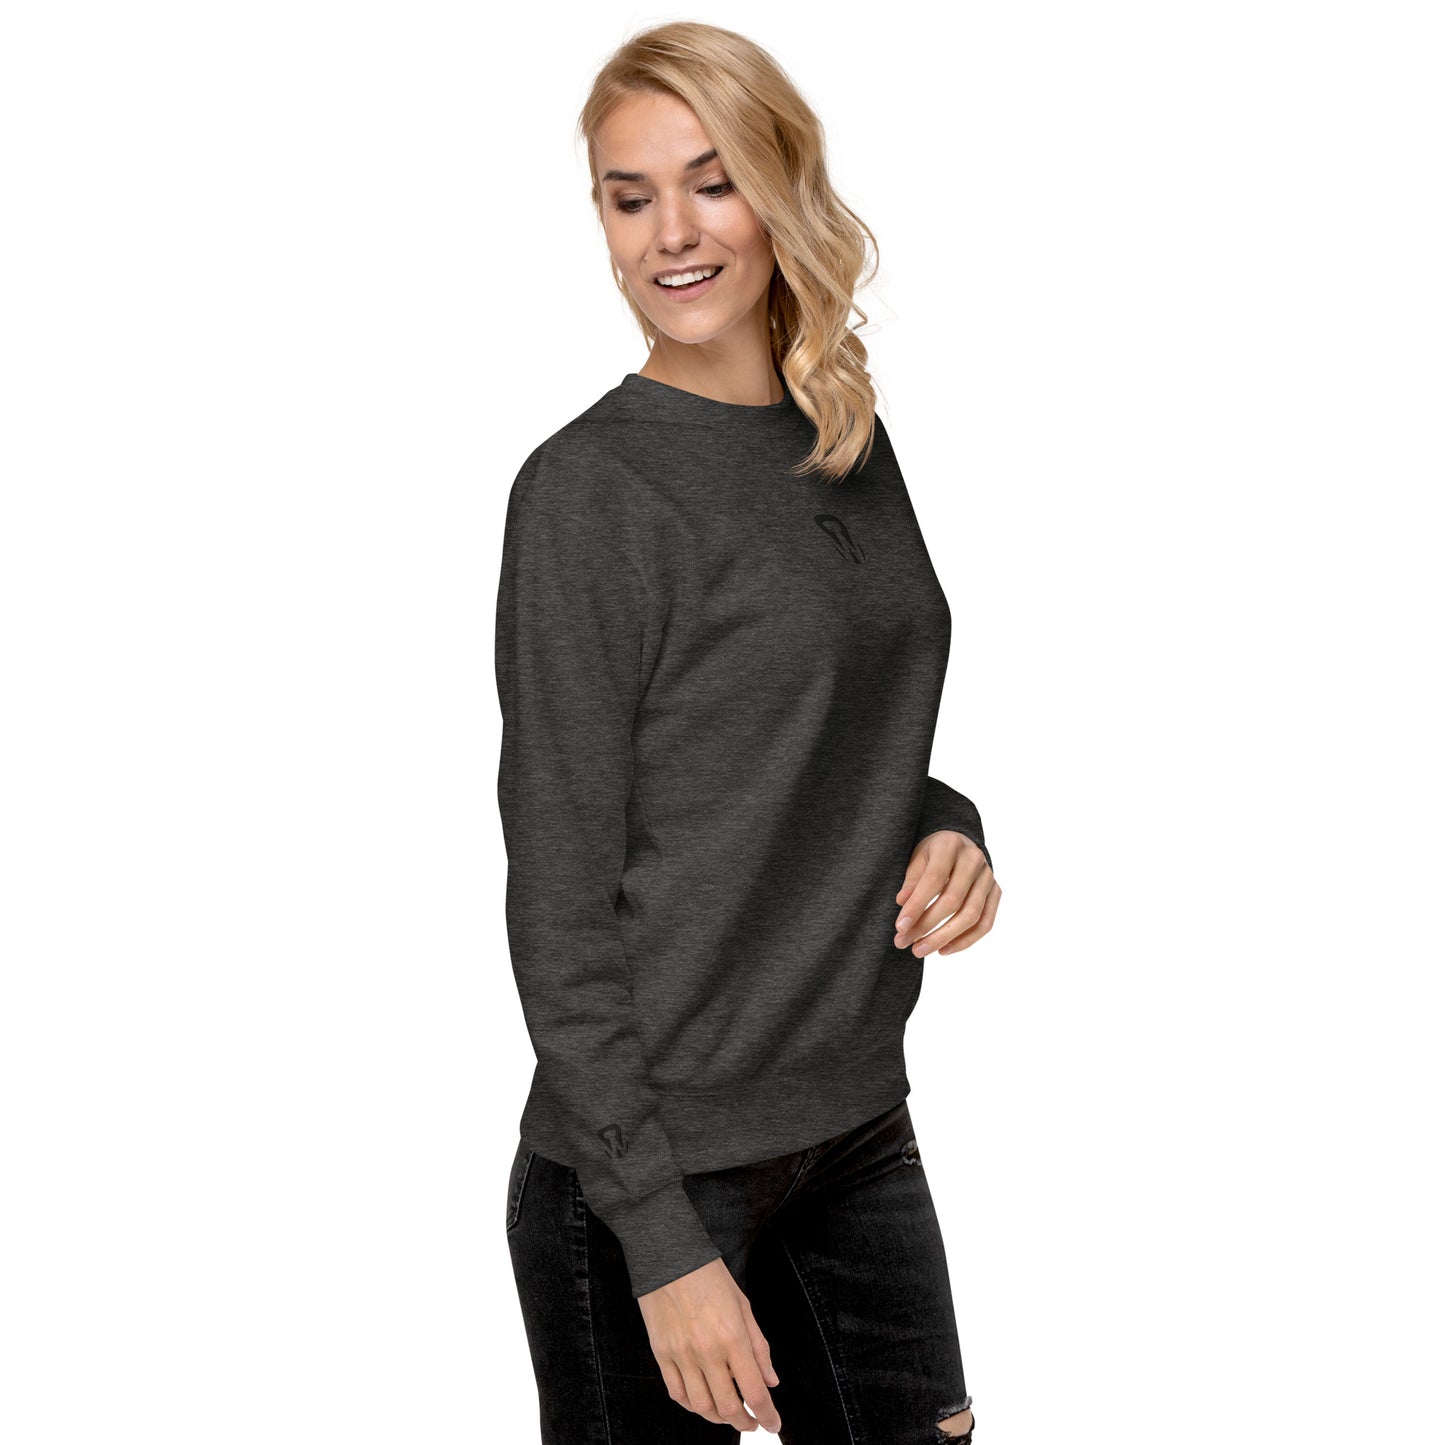 WODprep Kettlebell Premium Sweatshirt